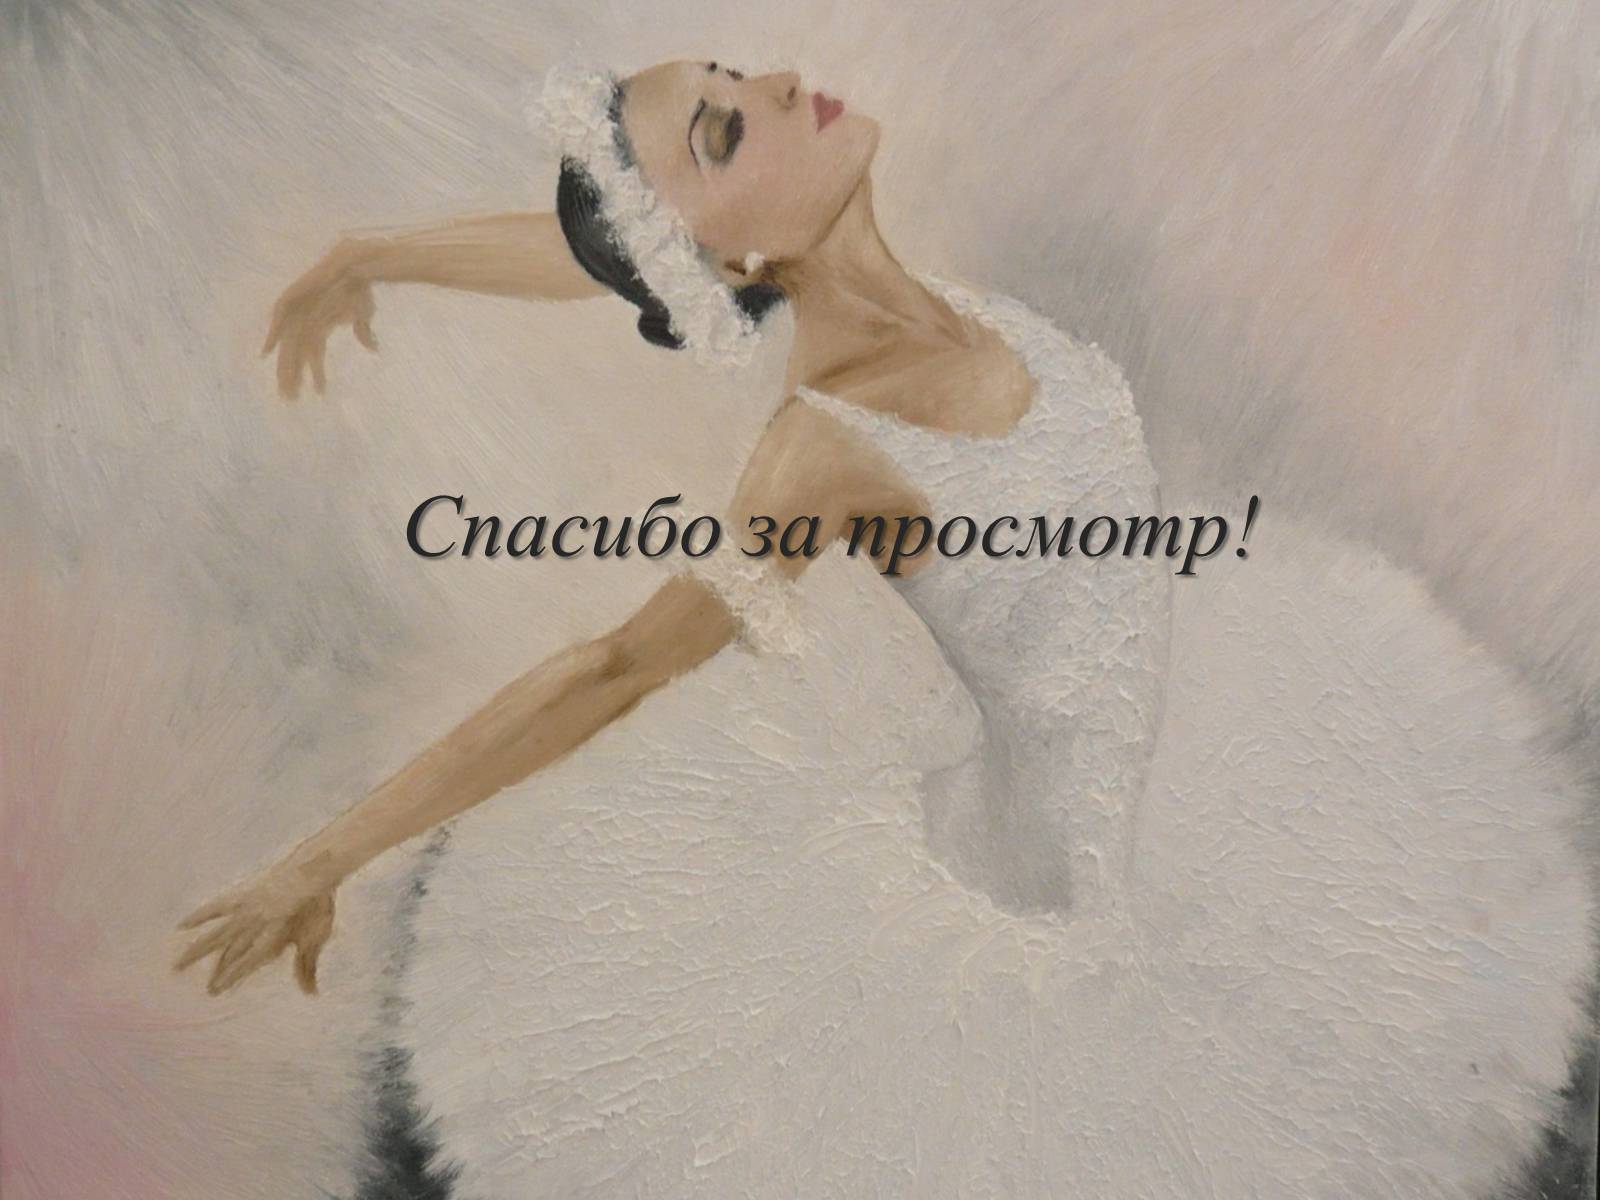 Песня благодарю танцы не люблю на русском. Спасибо за внимание балет. Спасибо за внимание балерина. Спасибо за внимание в стиле балета. Балерина благодарит.